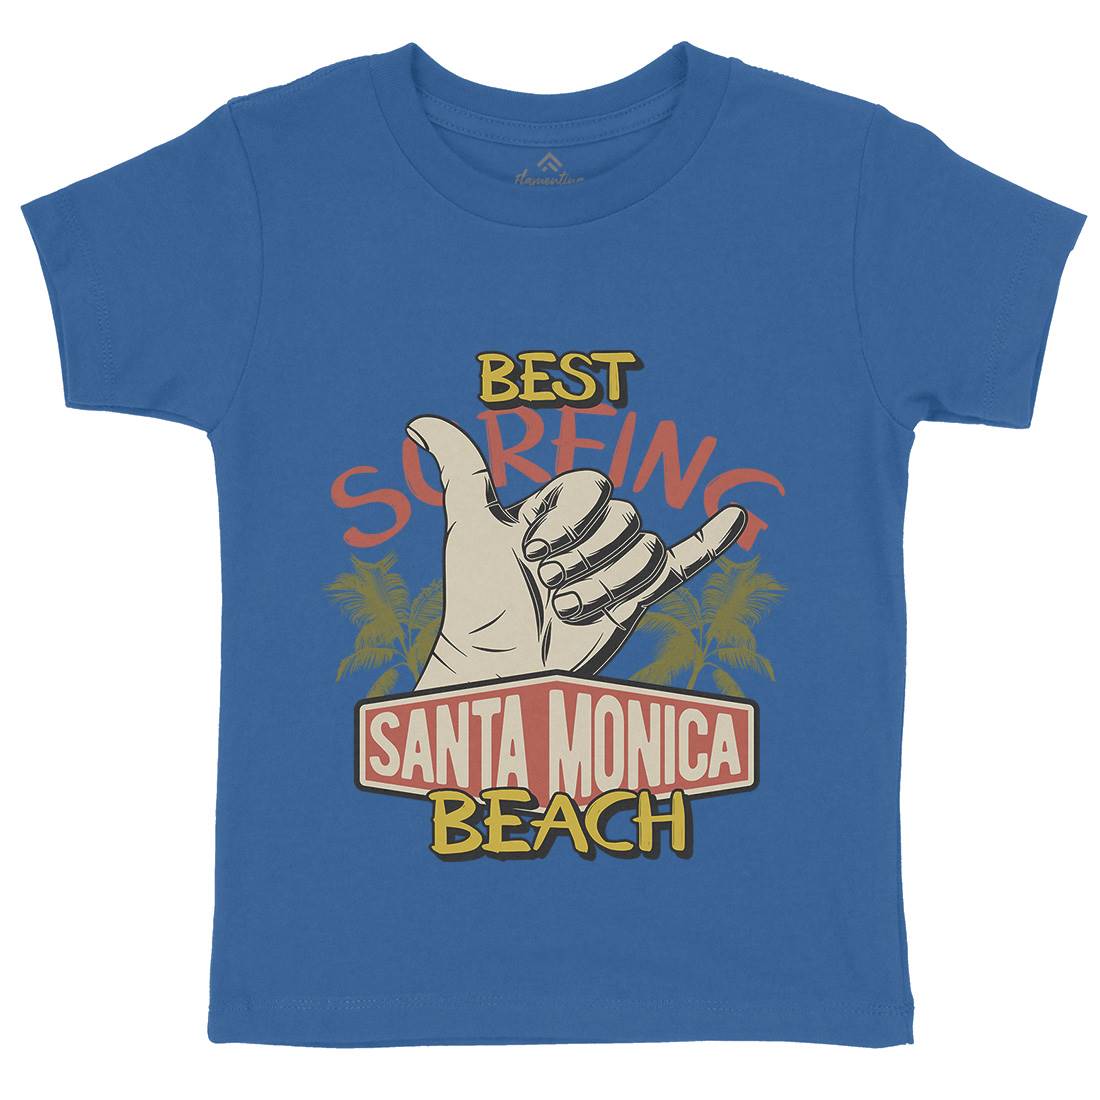 Best Surfing Beach Kids Organic Crew Neck T-Shirt Surf D909